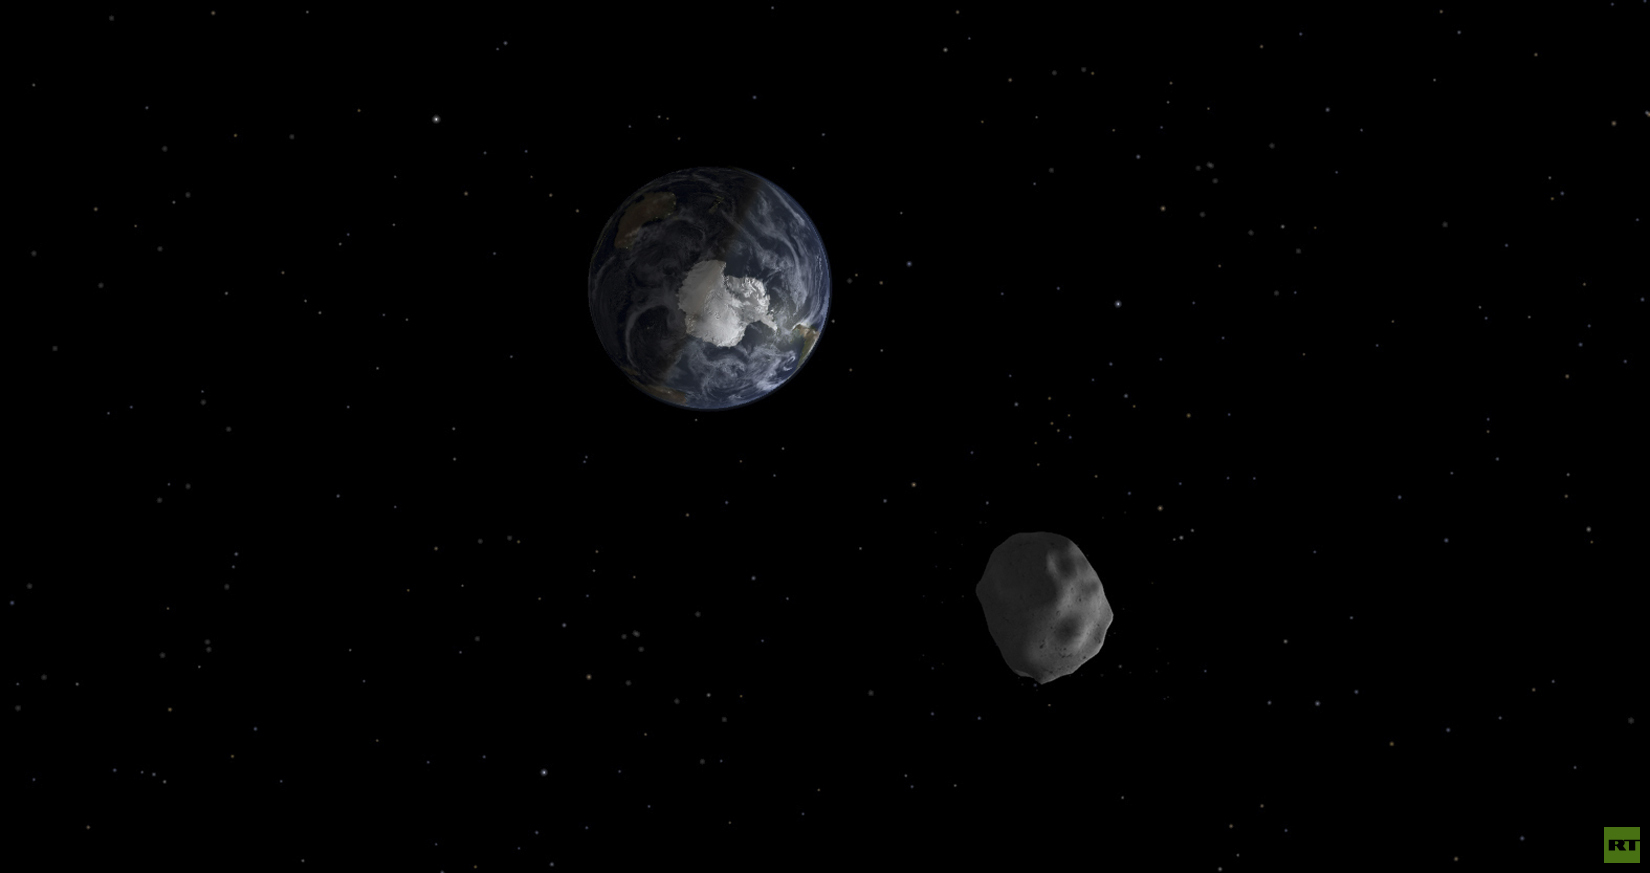 كويكب محتمل الخطورة يقترب من الأرض